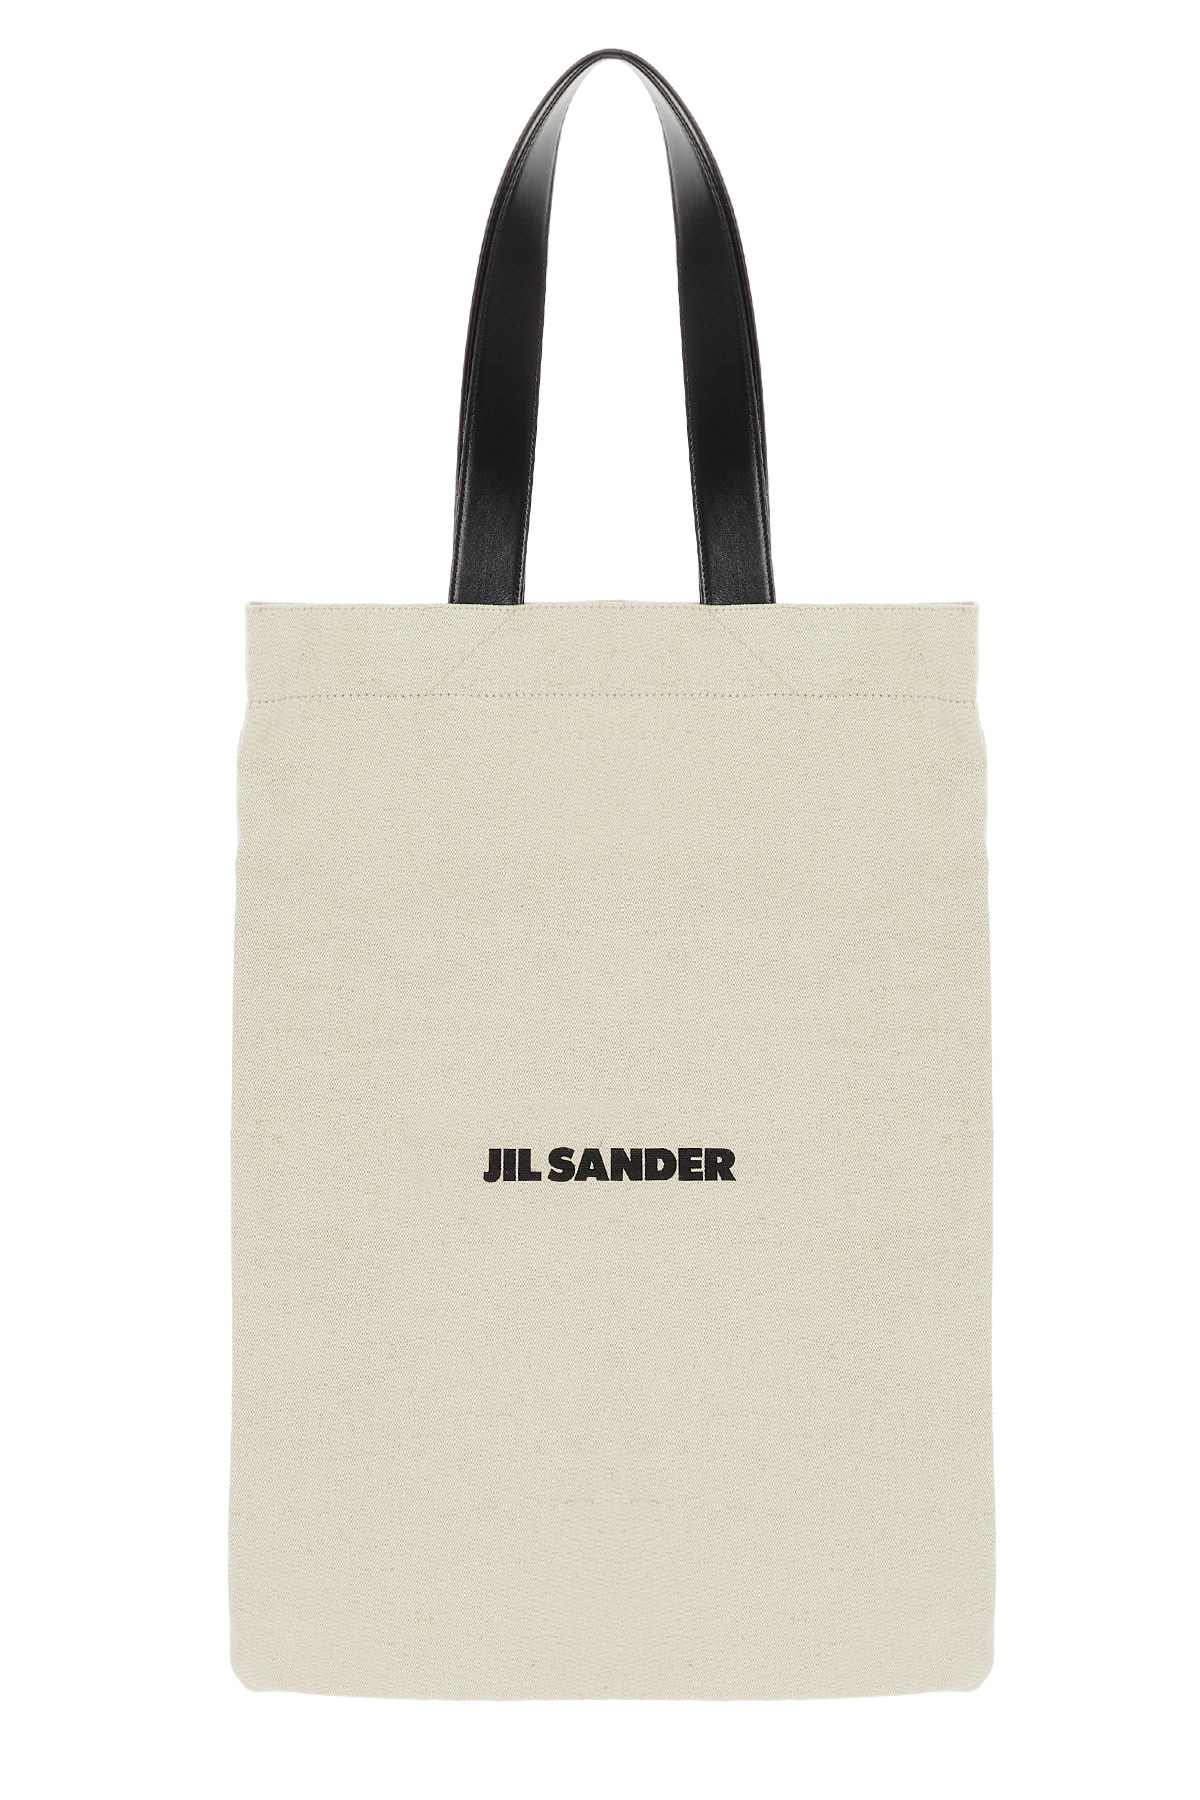 JIL SANDER Logo Print Shopping Bag